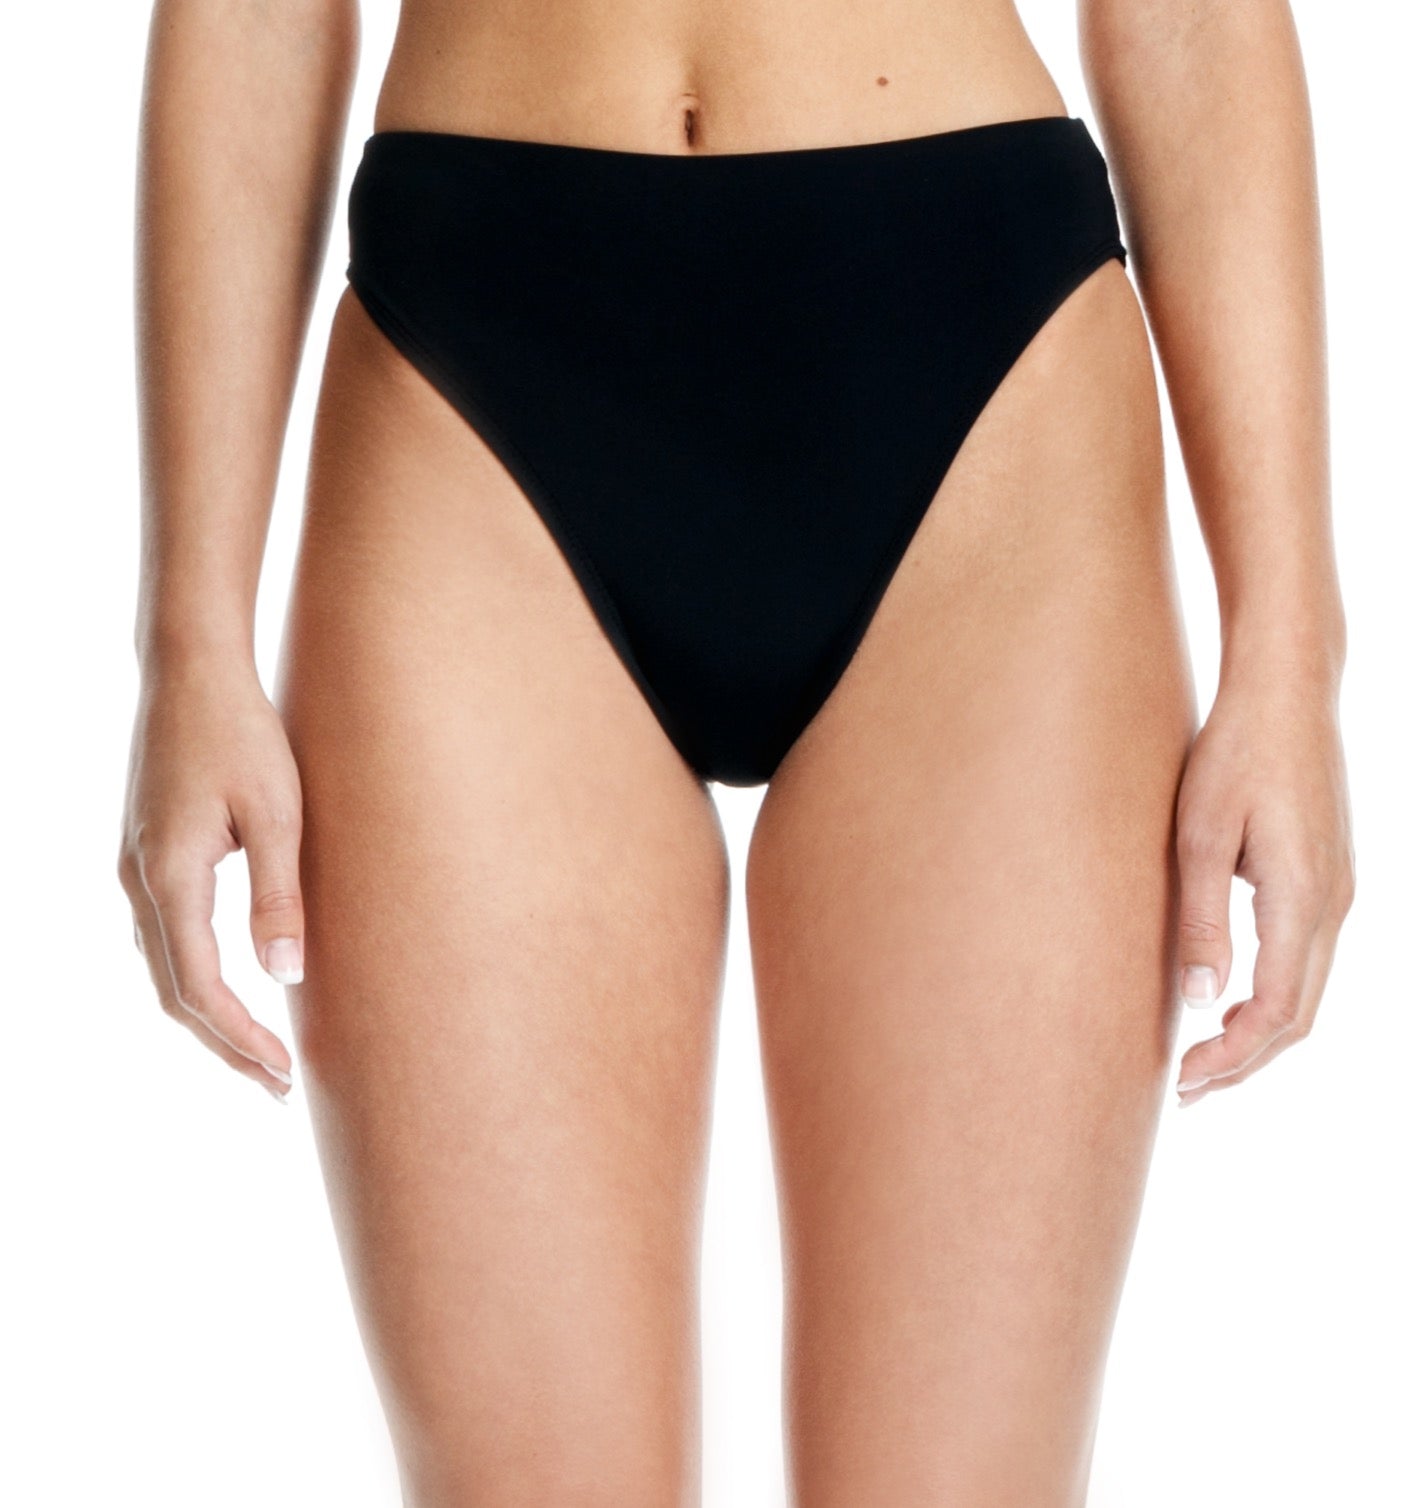 Black Bikini Bottom - High Waisted Bikini Bottom - Swim Bottoms